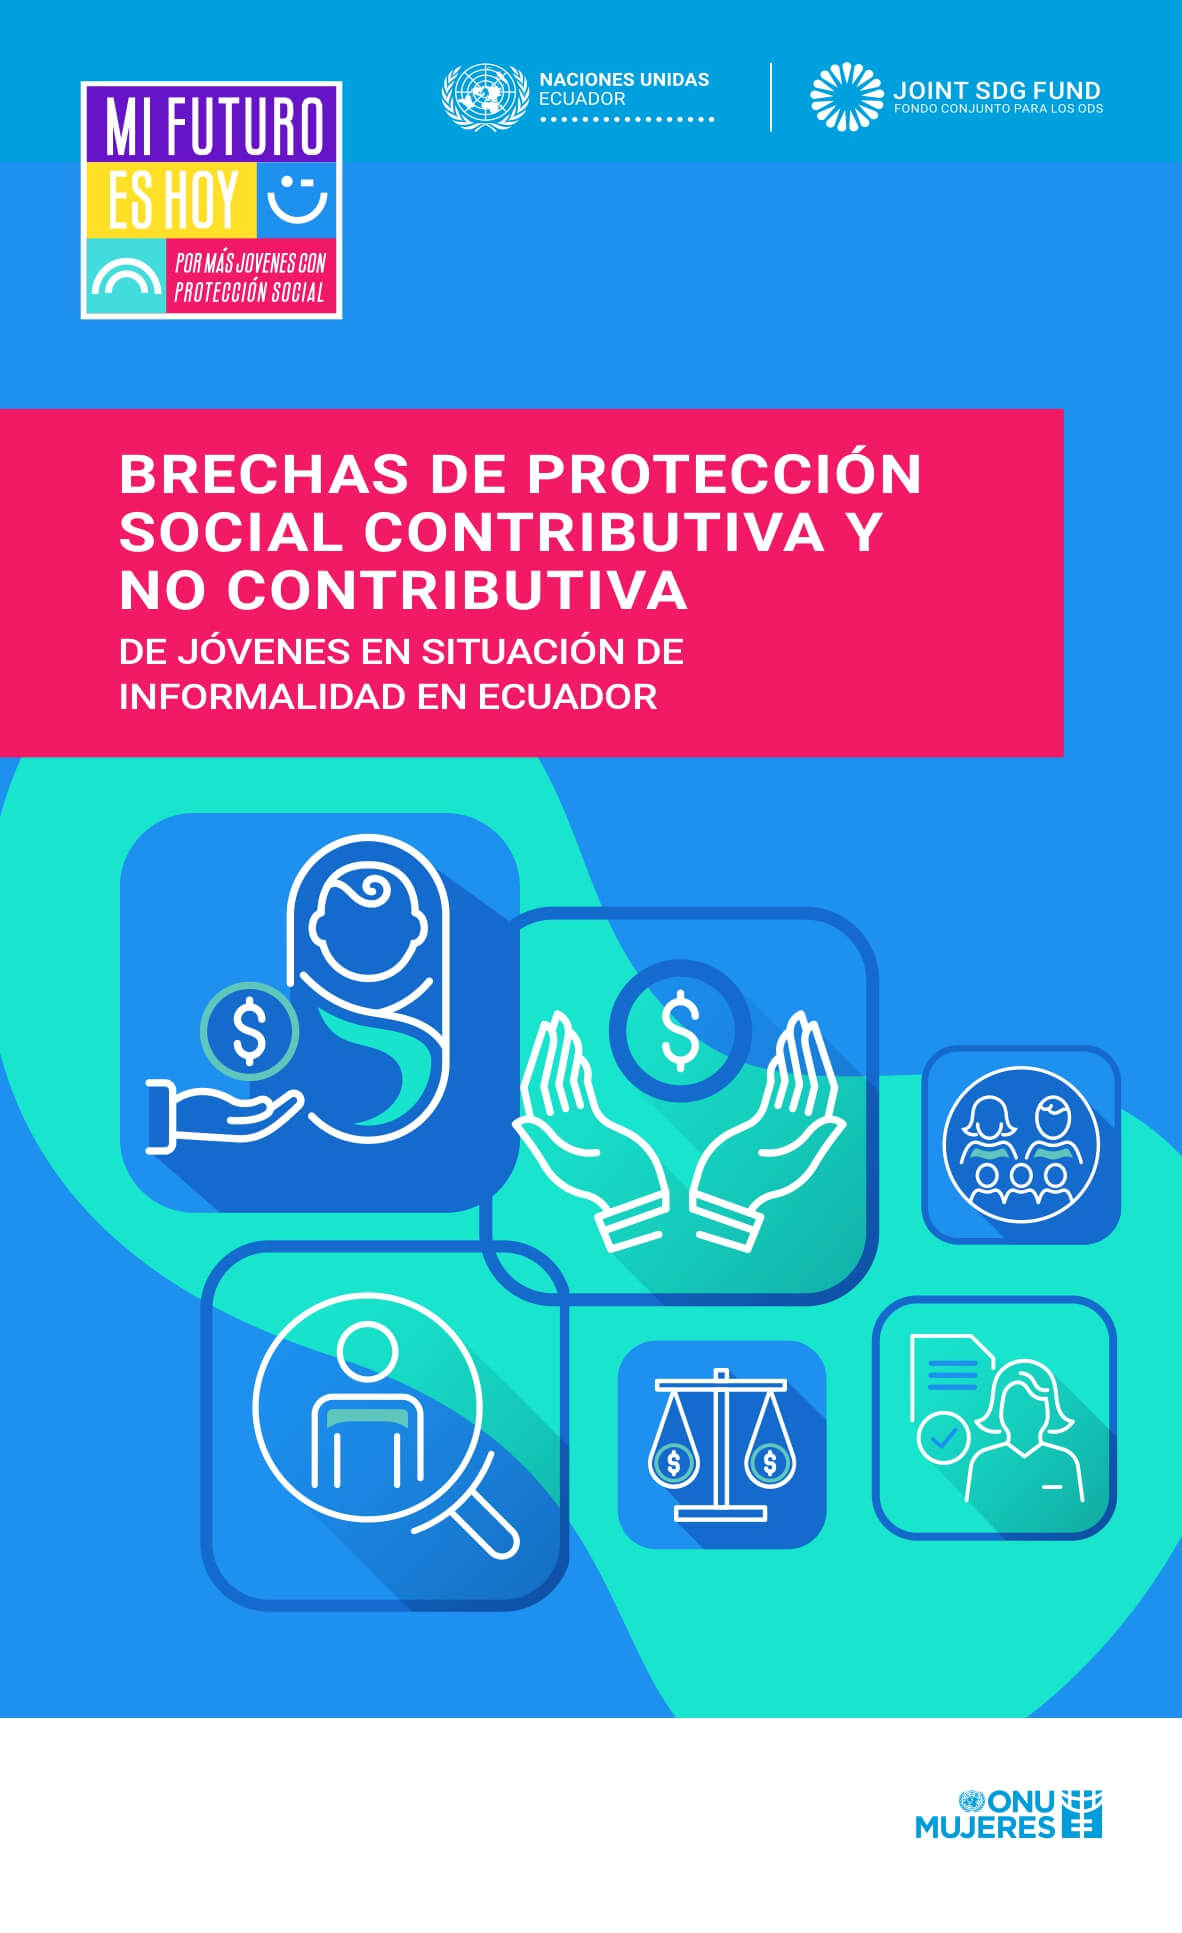 Brechas de protección social contributiva y no contributiva de jóvenes en situación de informalidad en Ecuador